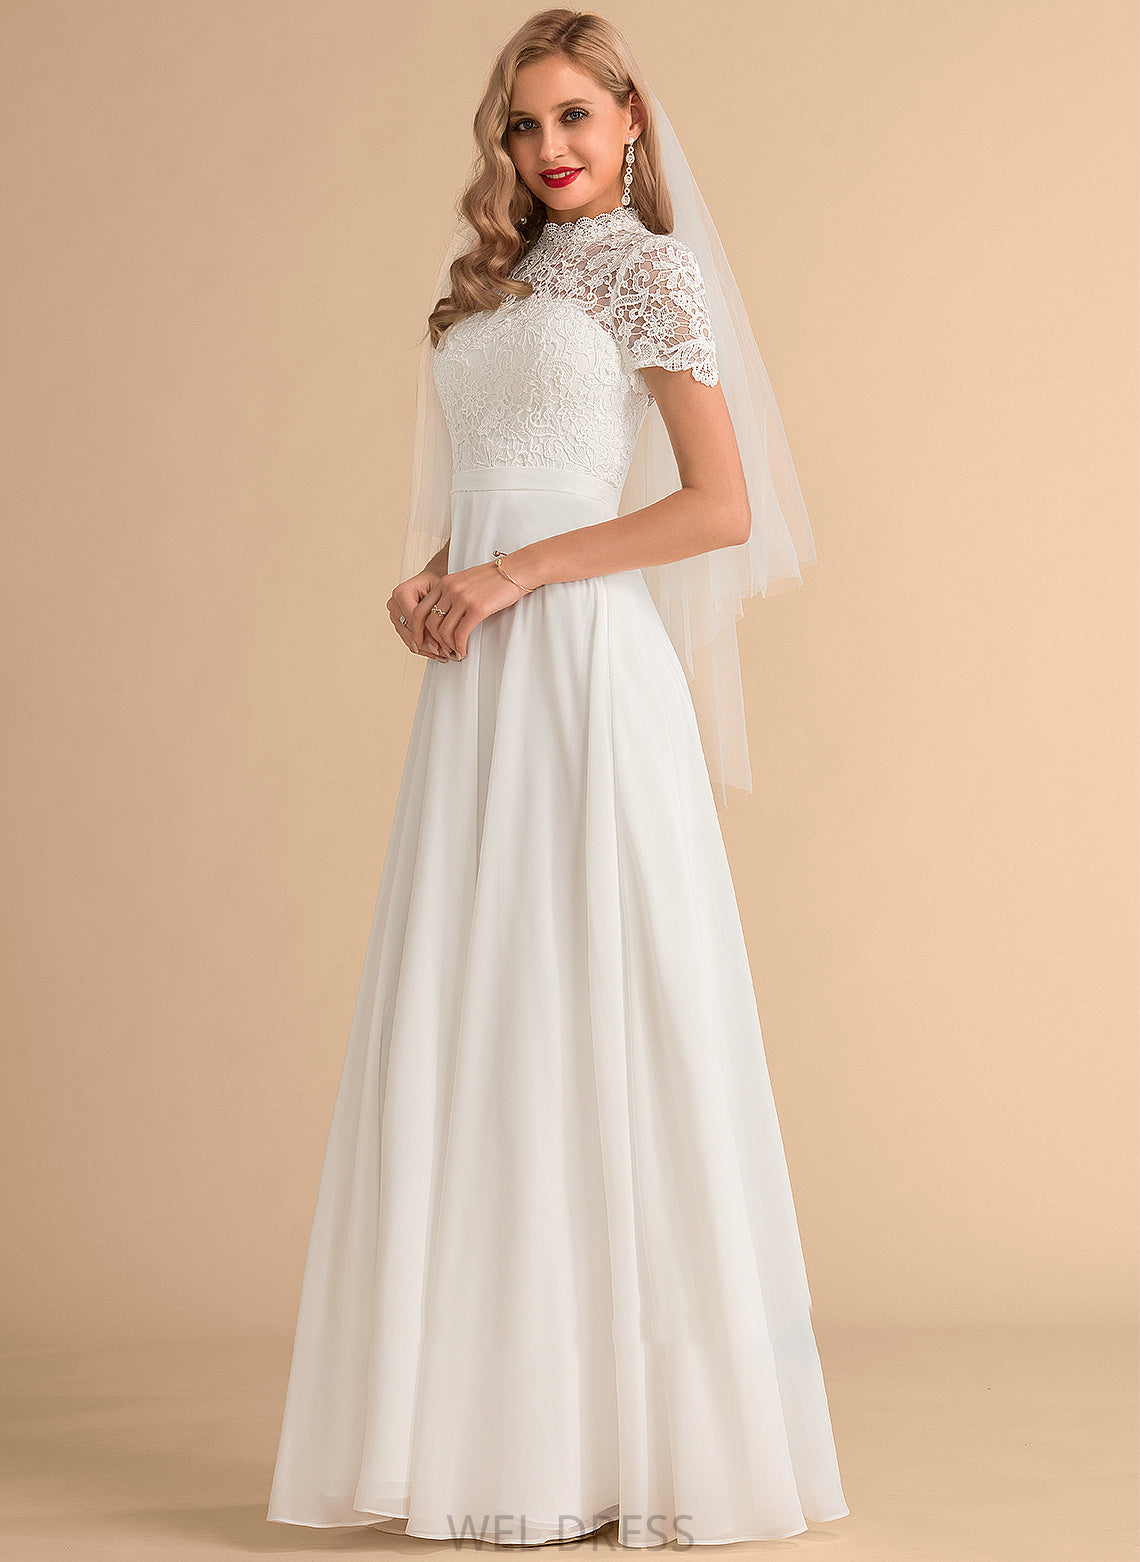 Neck Lace High Wedding Gwendolyn Floor-Length A-Line Wedding Dresses Dress Chiffon